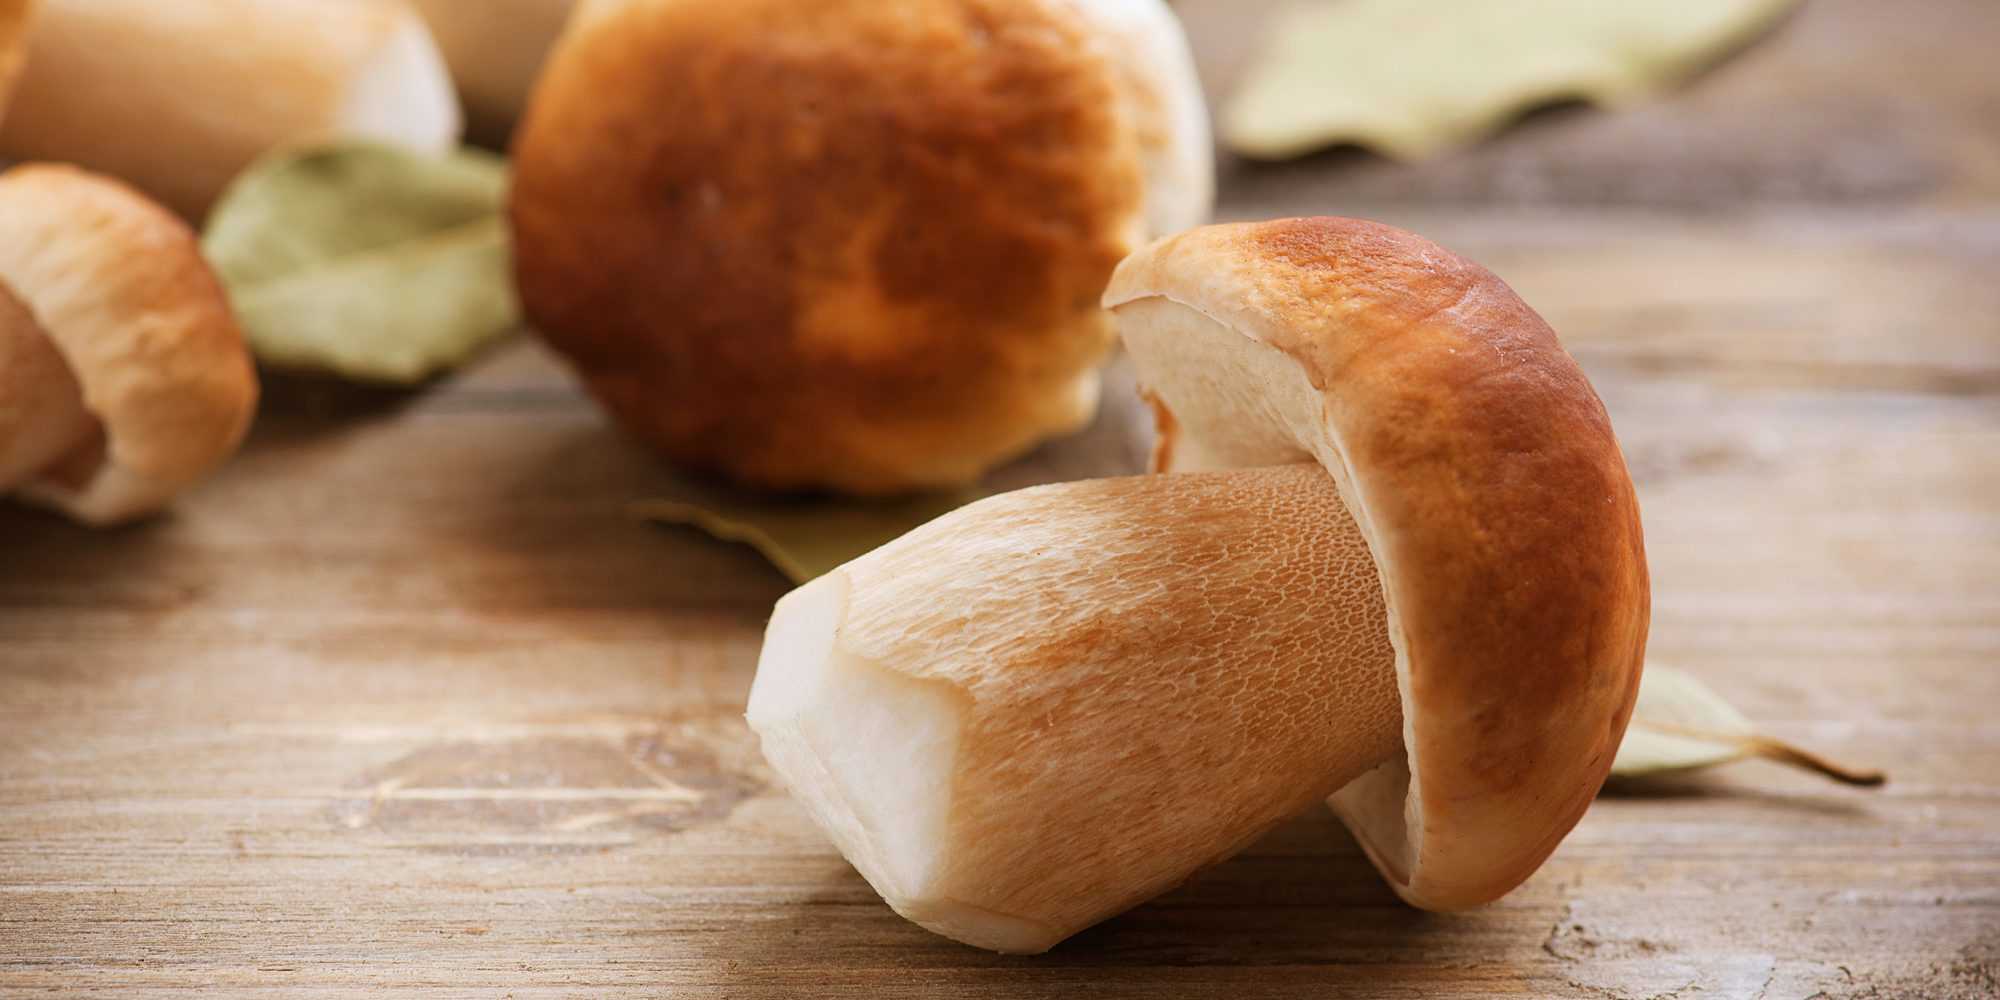 Сколько варить грибы и как это правильно делать? как варить сушеные и замороженные грибы? - автор екатерина данилова - журнал женское мнение